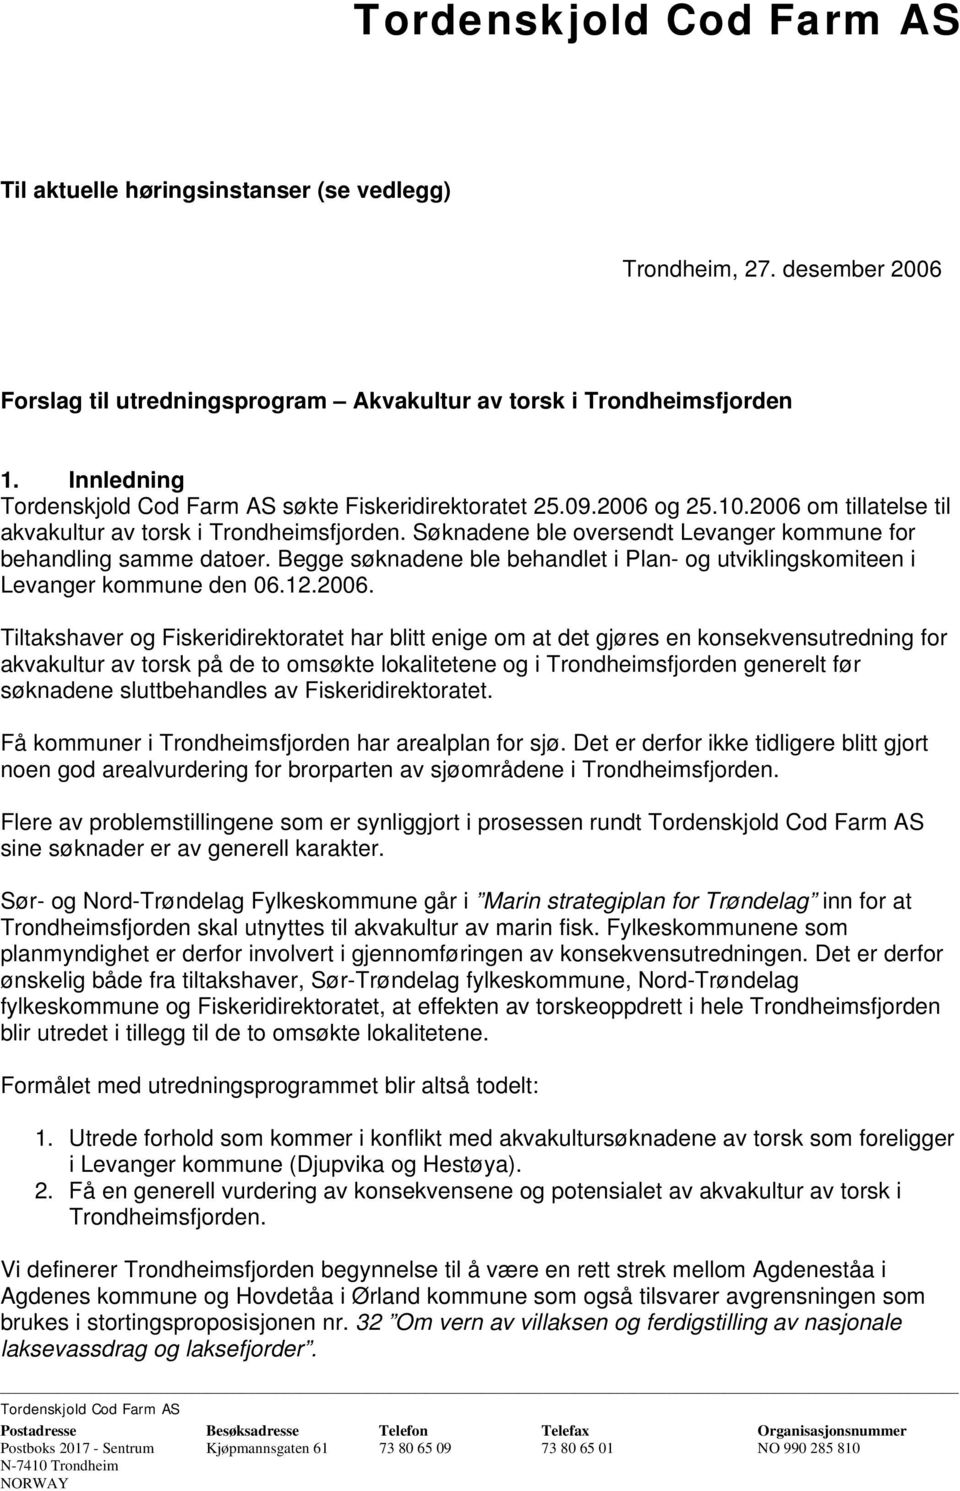 Søknadene ble oversendt Levanger kommune for behandling samme datoer. Begge søknadene ble behandlet i Plan- og utviklingskomiteen i Levanger kommune den 06.12.2006.